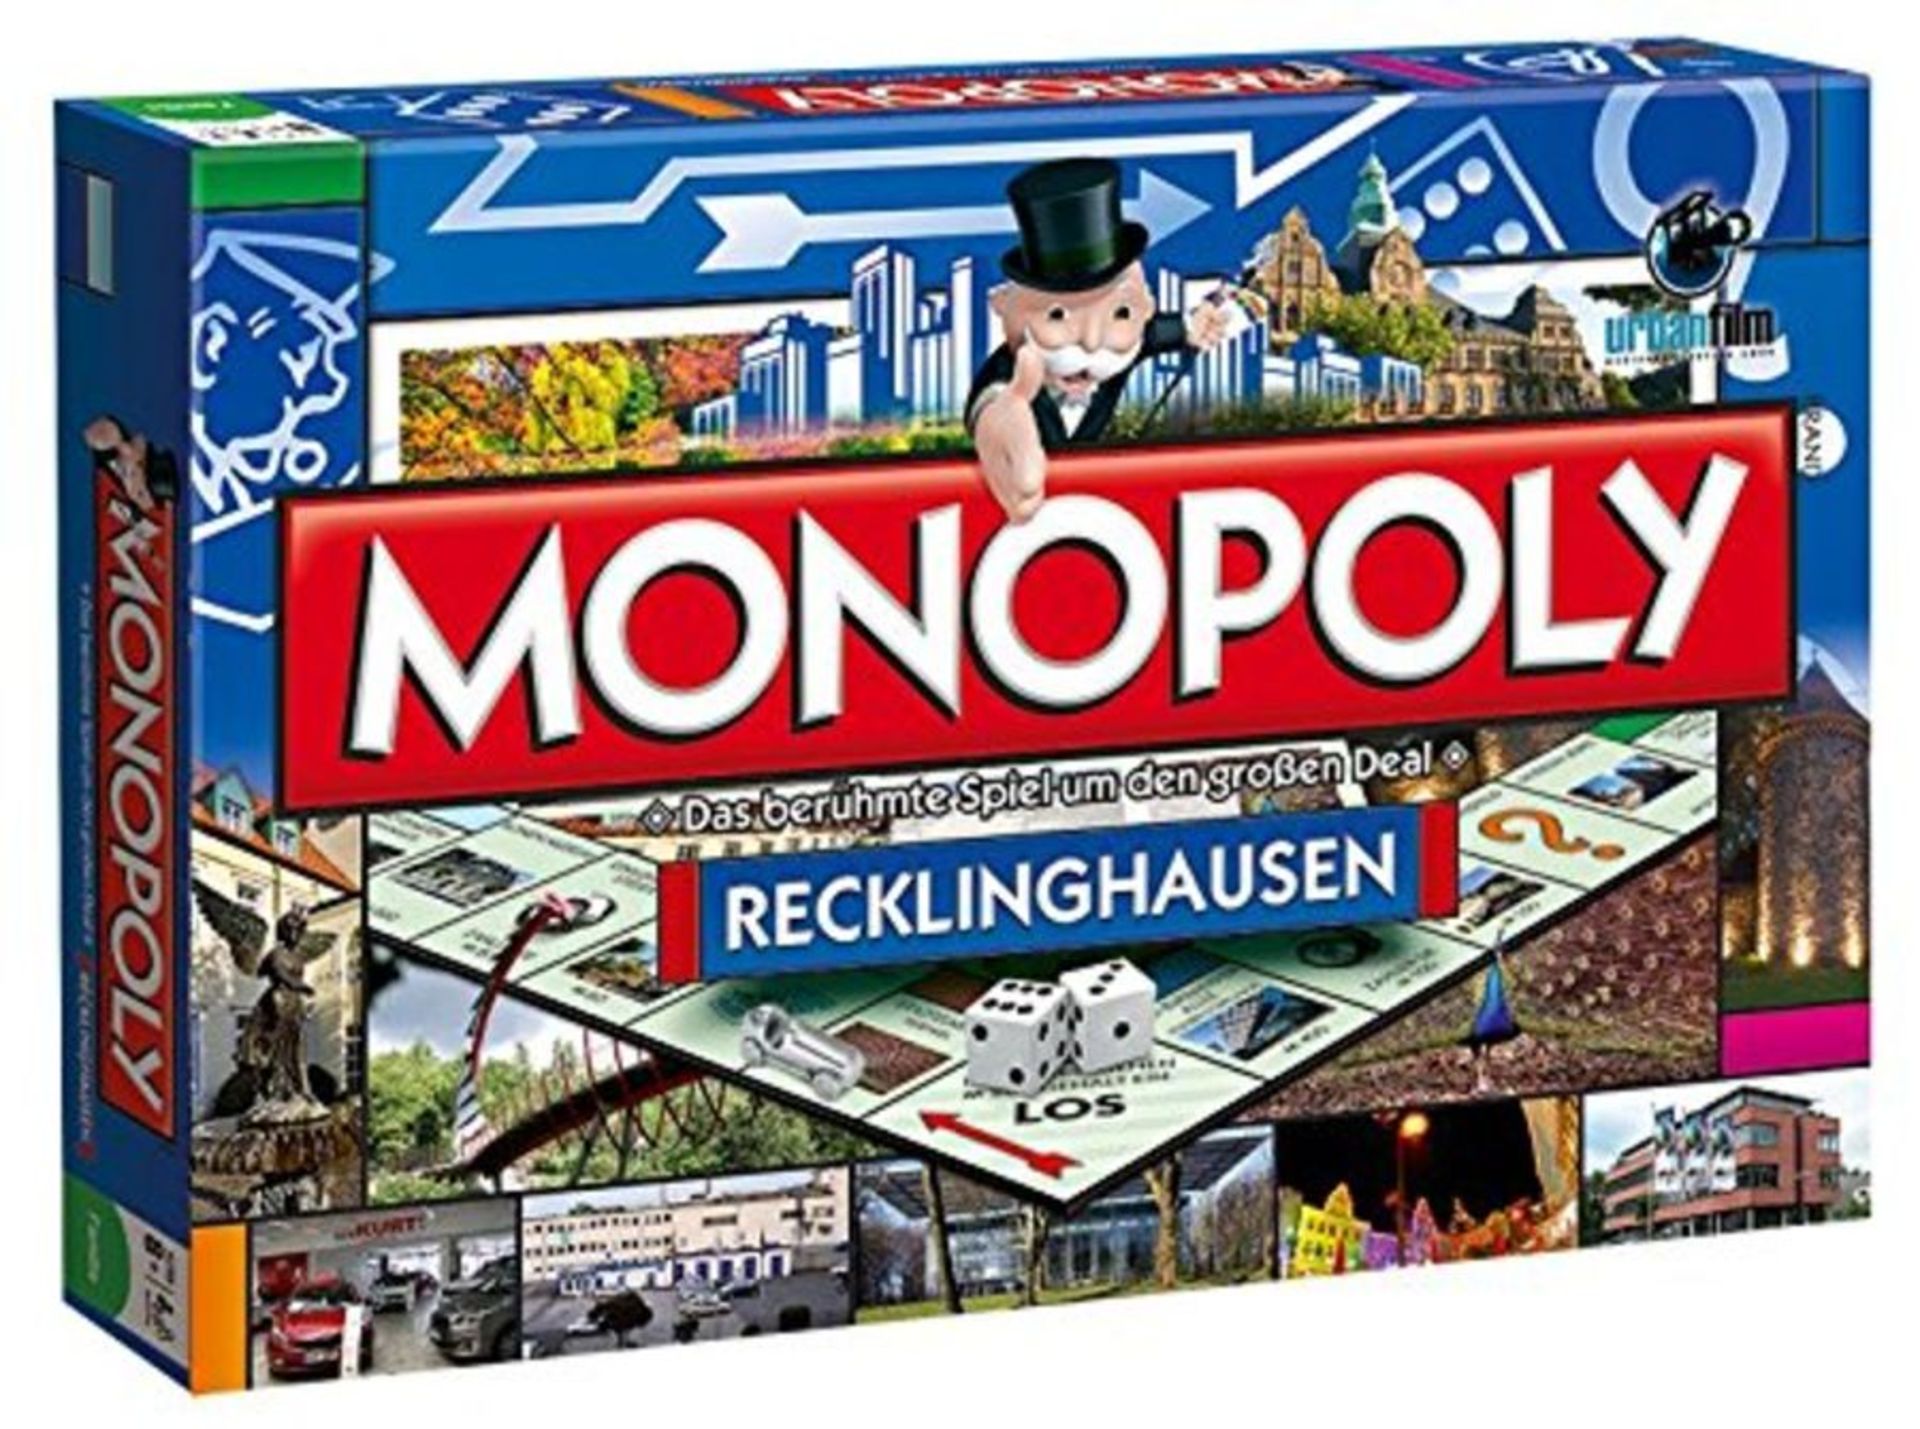 Monopoly Recklinghausen Stadt Edition - das weltberühmte Spiel um Grundbesitz und Imm